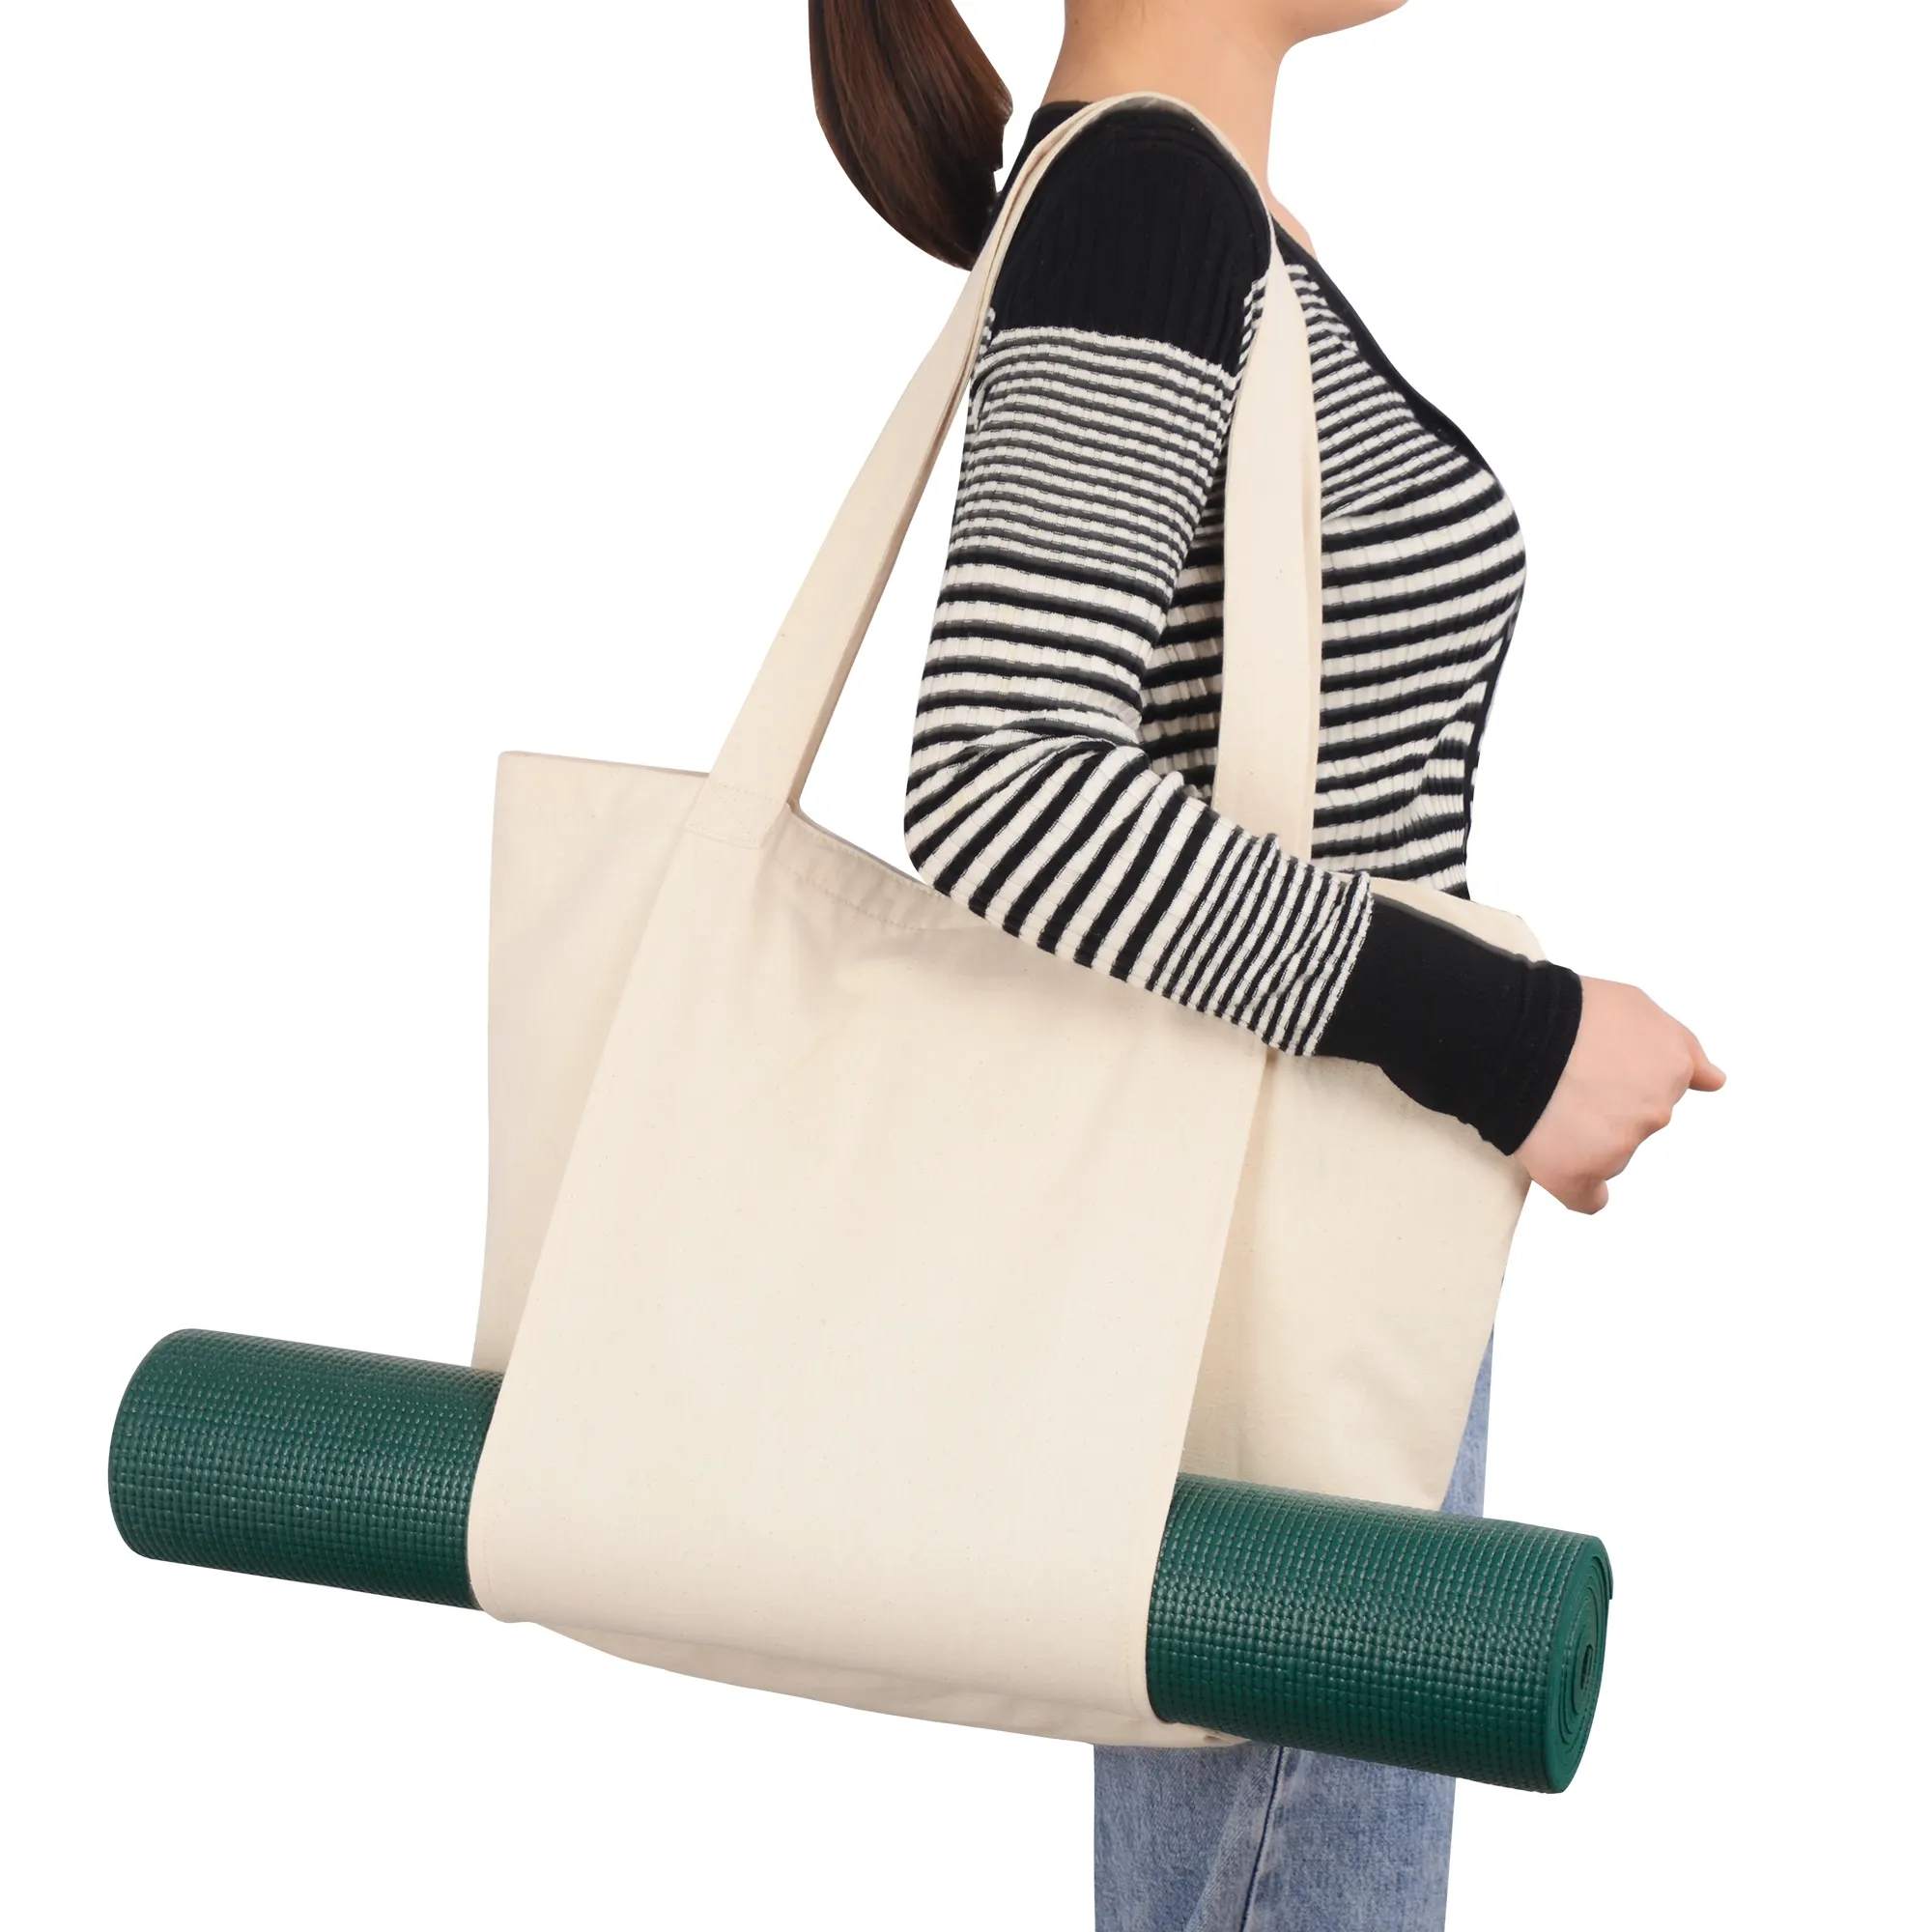 Büyük Yoga Mat çanta ve taşıyıcıları uyar tüm malzeme Yoga aksesuarları spor omuzdan askili çanta pamuk kanvas Yoga Tote çanta